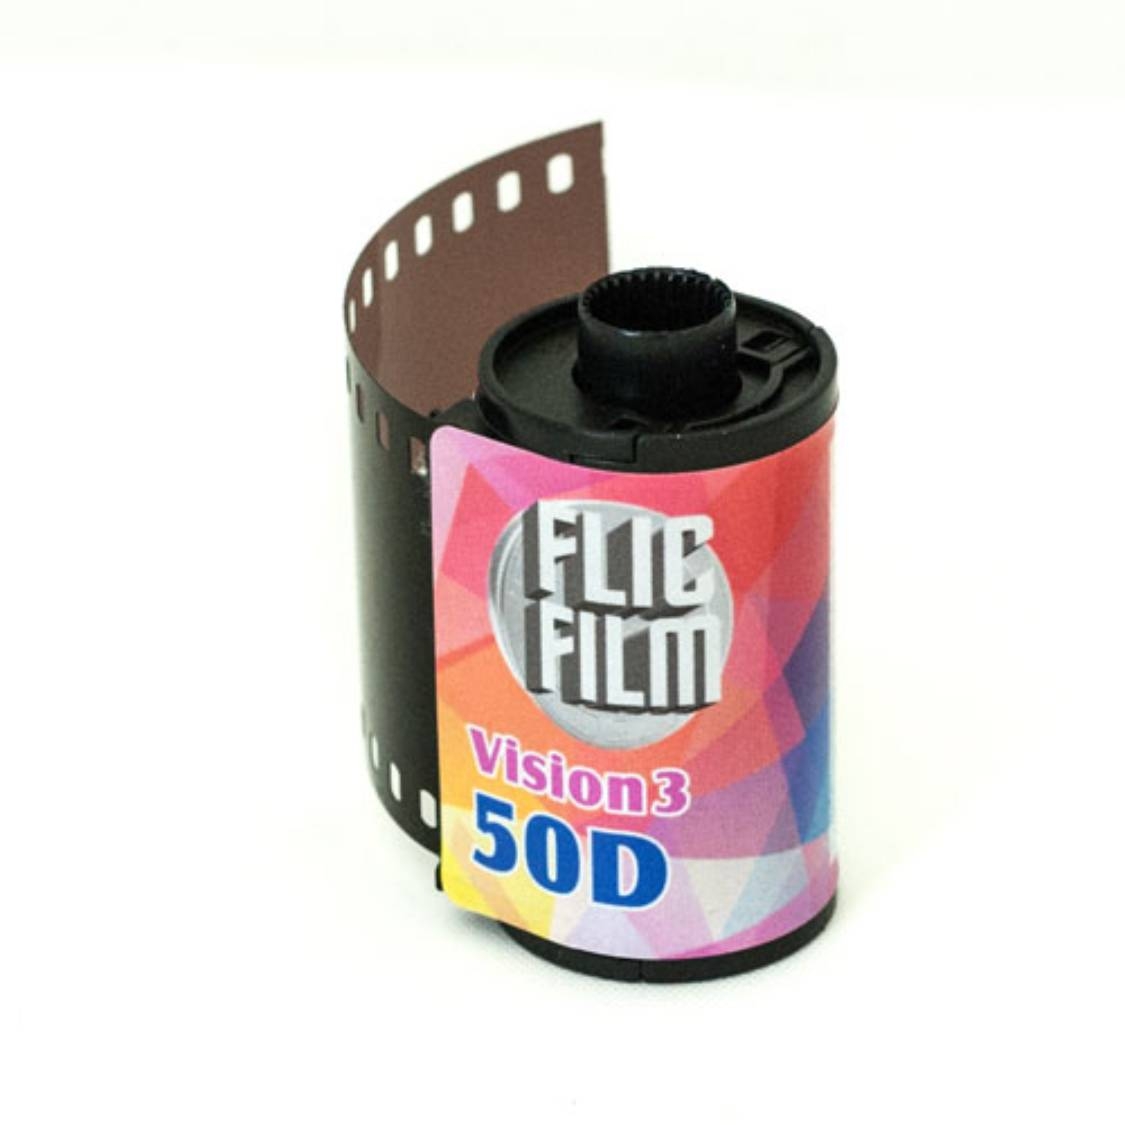 Flicfilm Vision 3 50D 135 Film